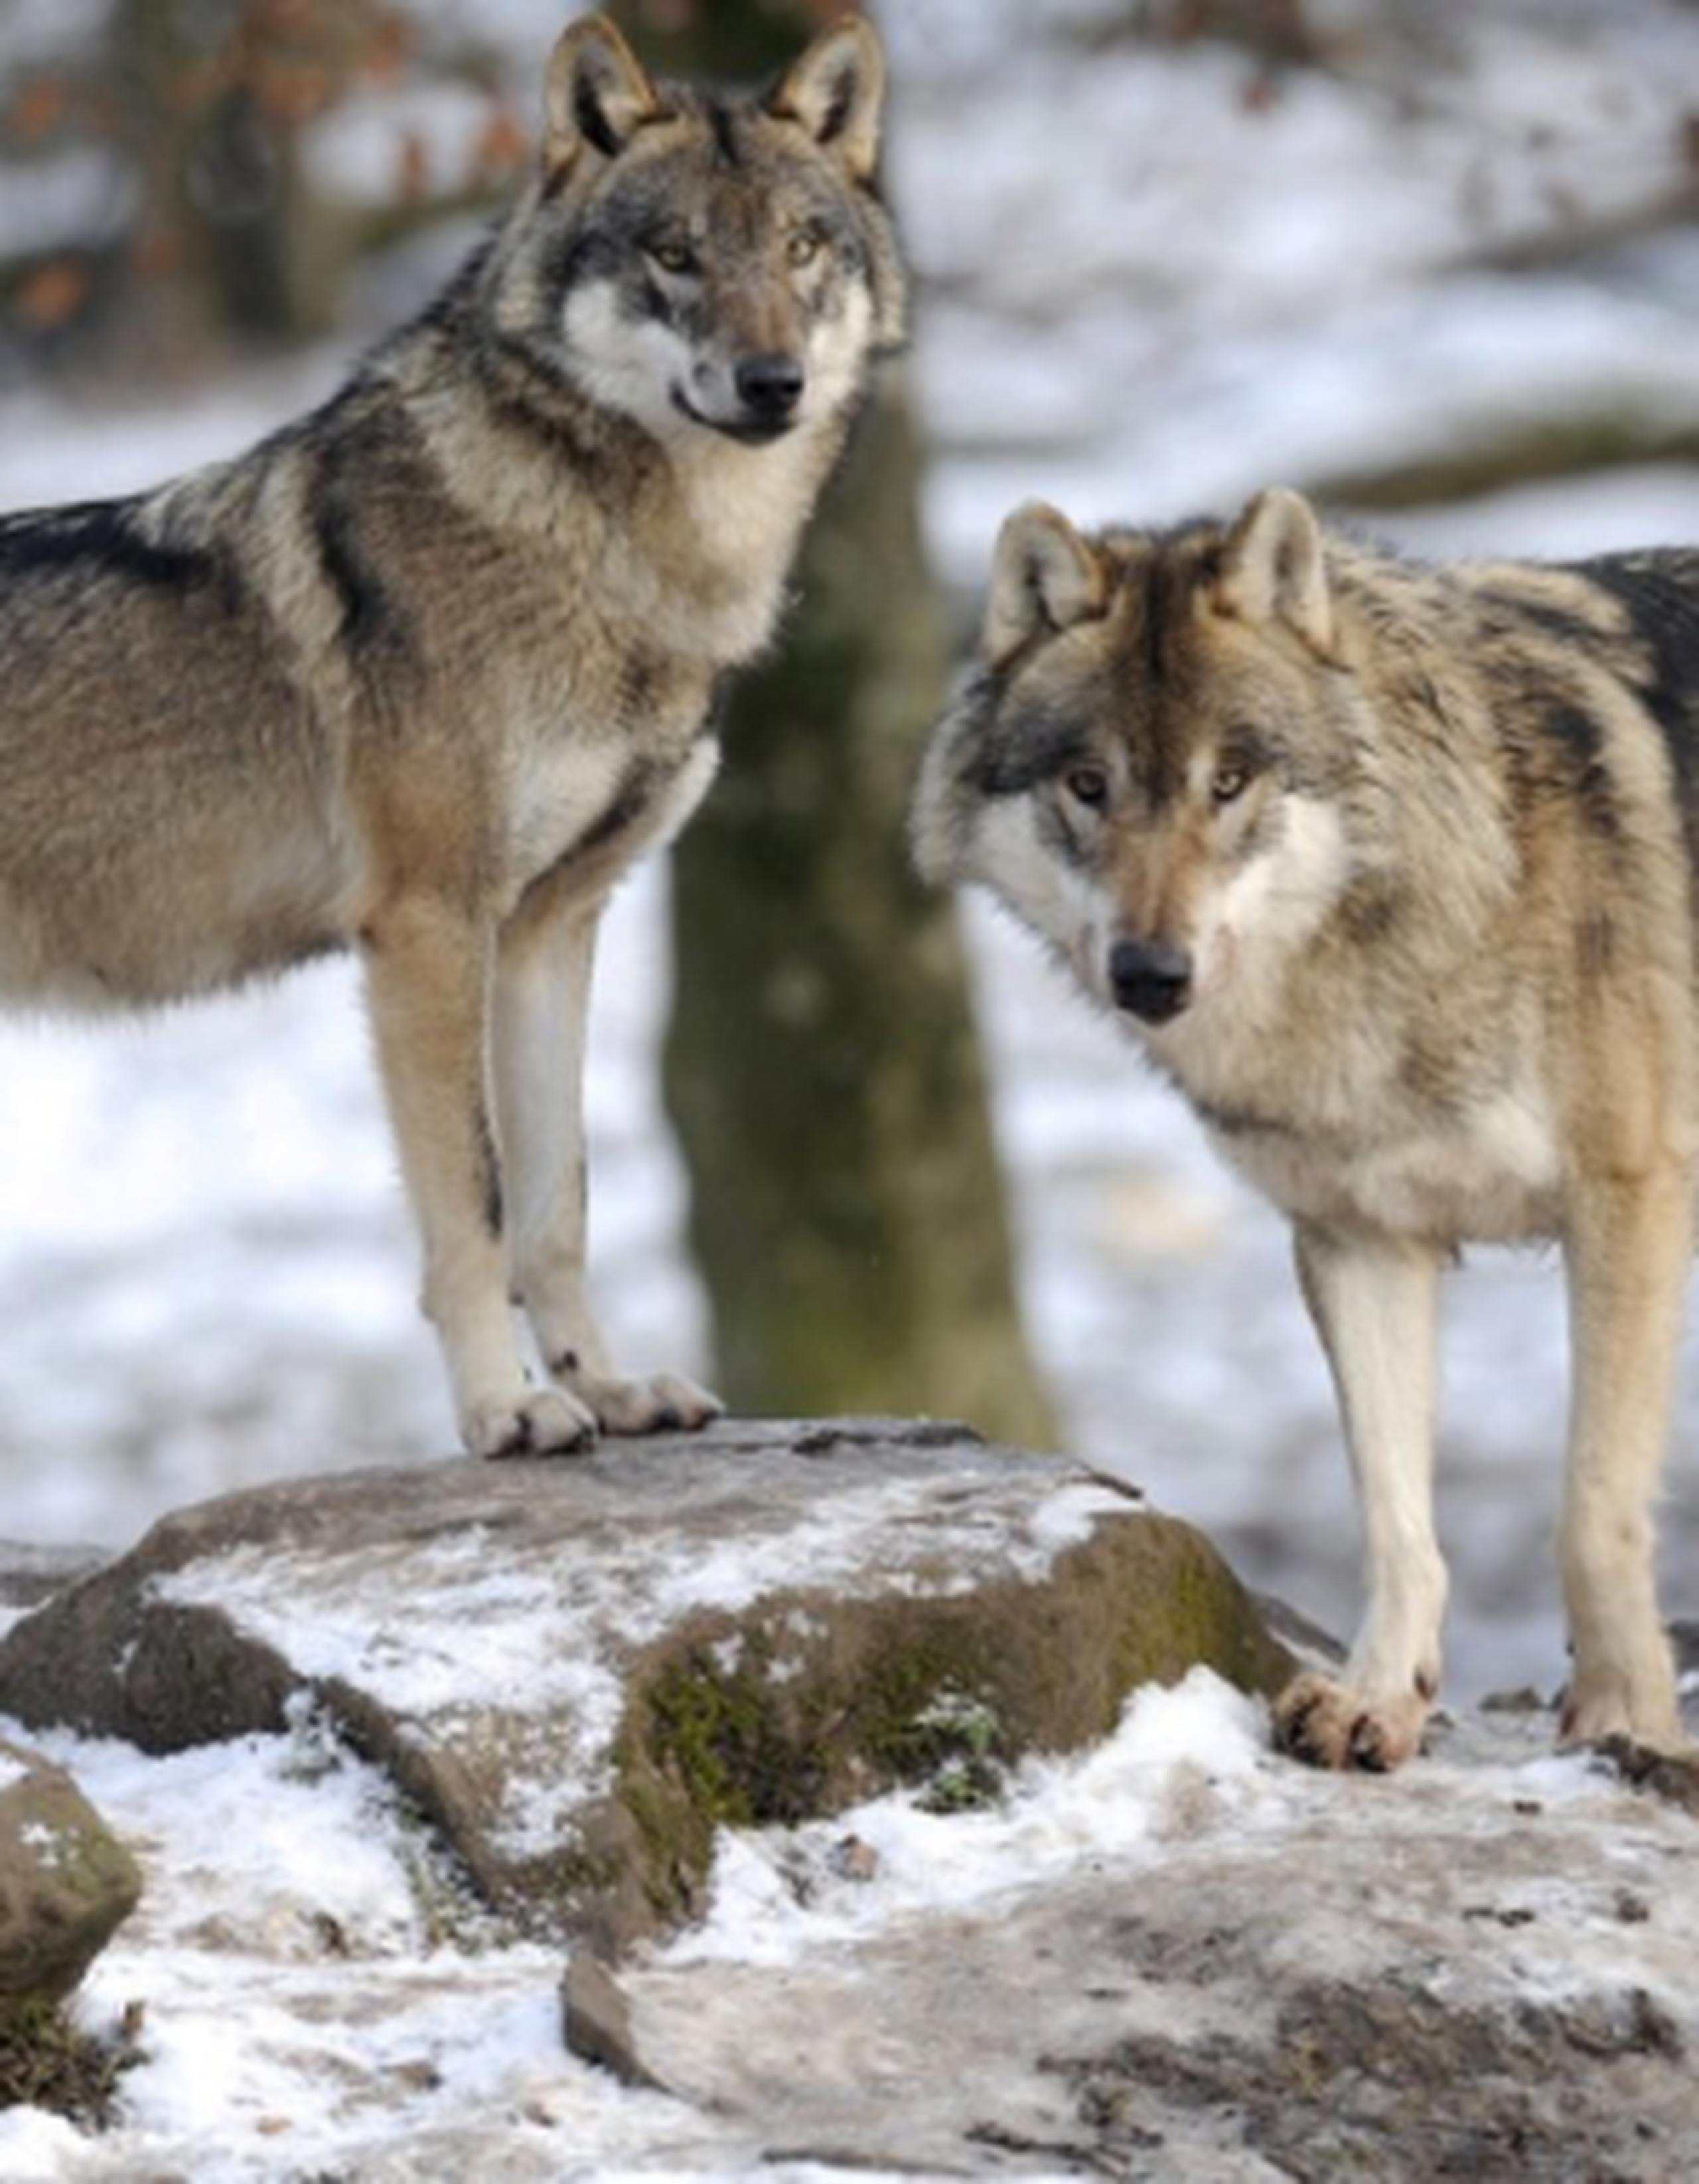 Investigadores recogieron muestras de ADN de fósiles de 18 antiguas criaturas semejantes a lobos y perros que vivieron hace 36,000 años en diferentes partes del mundo. (Prensa Asociada)